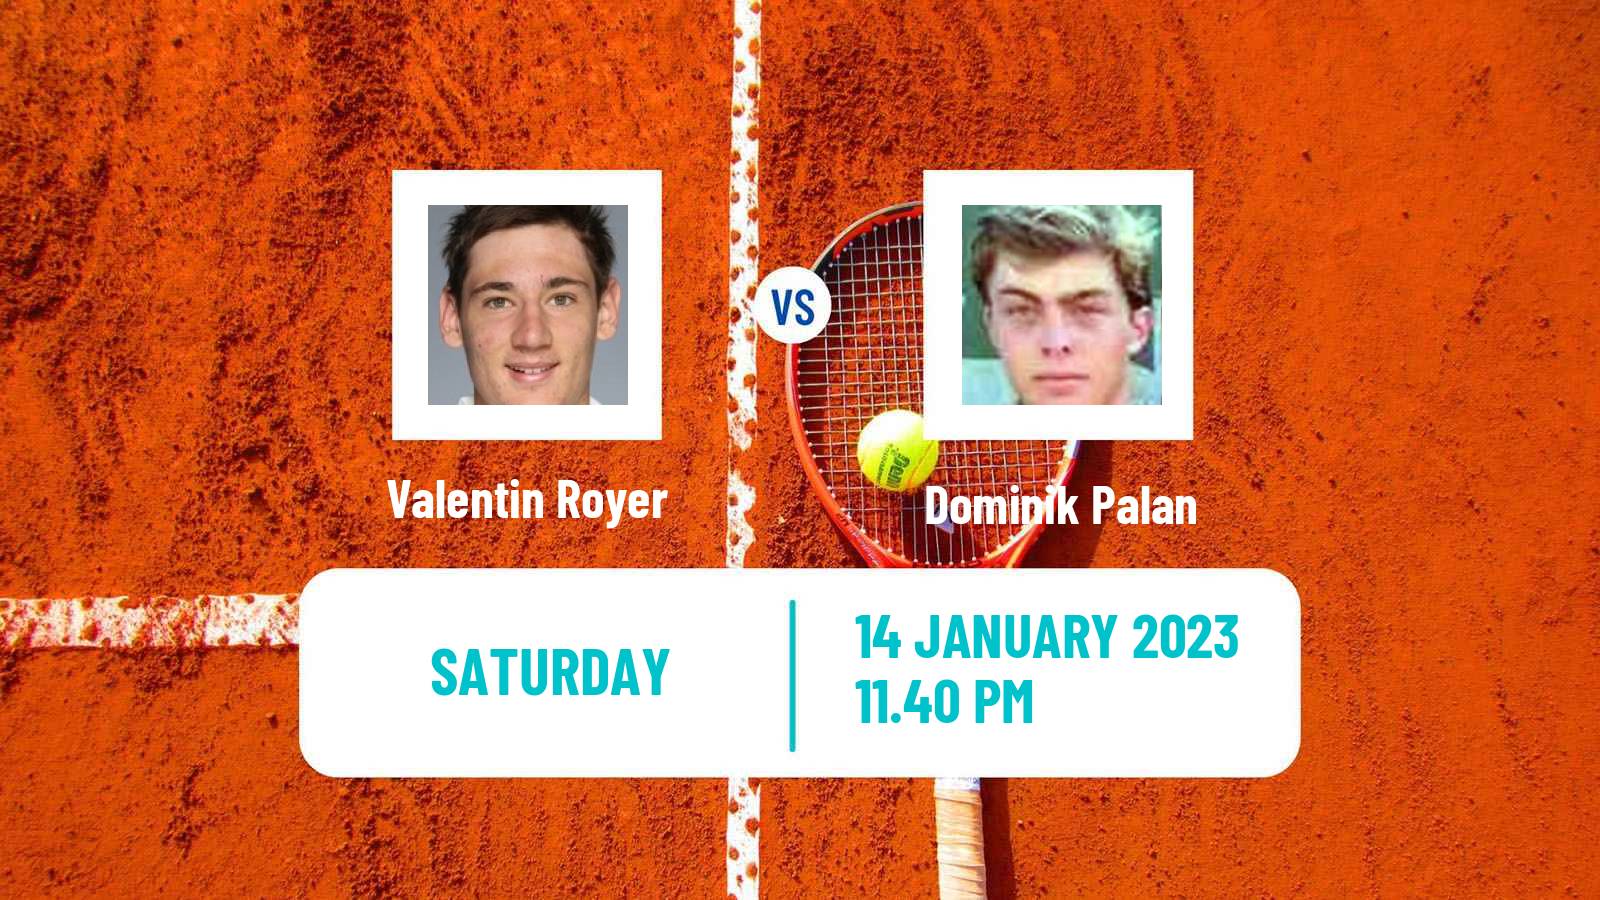 Tennis ATP Challenger Valentin Royer - Dominik Palan